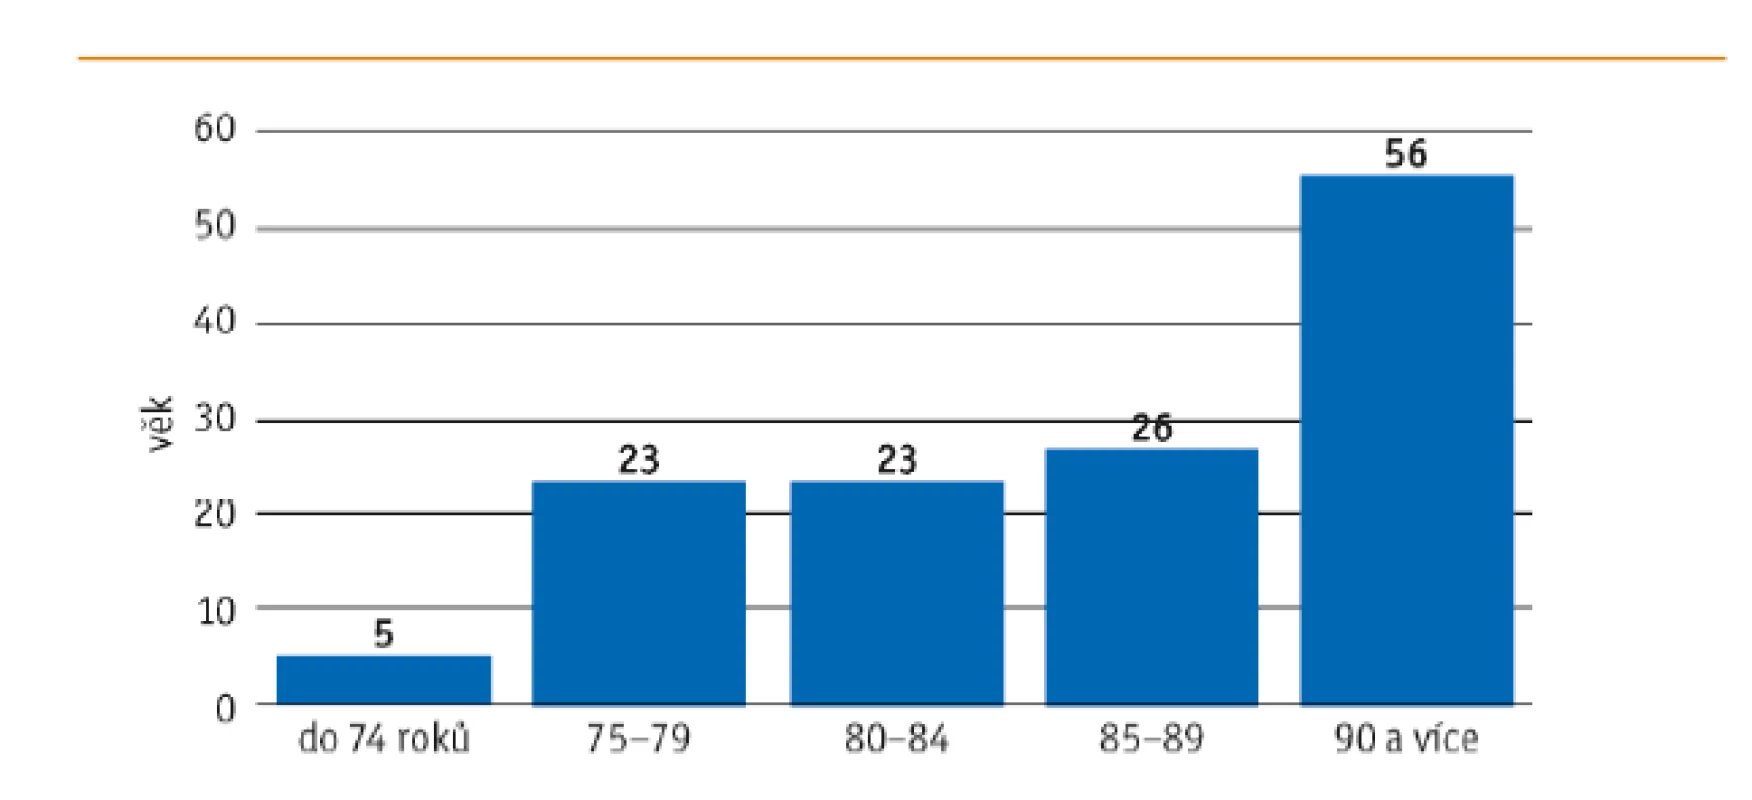 Podíl pacientů s profesionální pomocí či asistencí při běžných činnostech podle věku (v %)